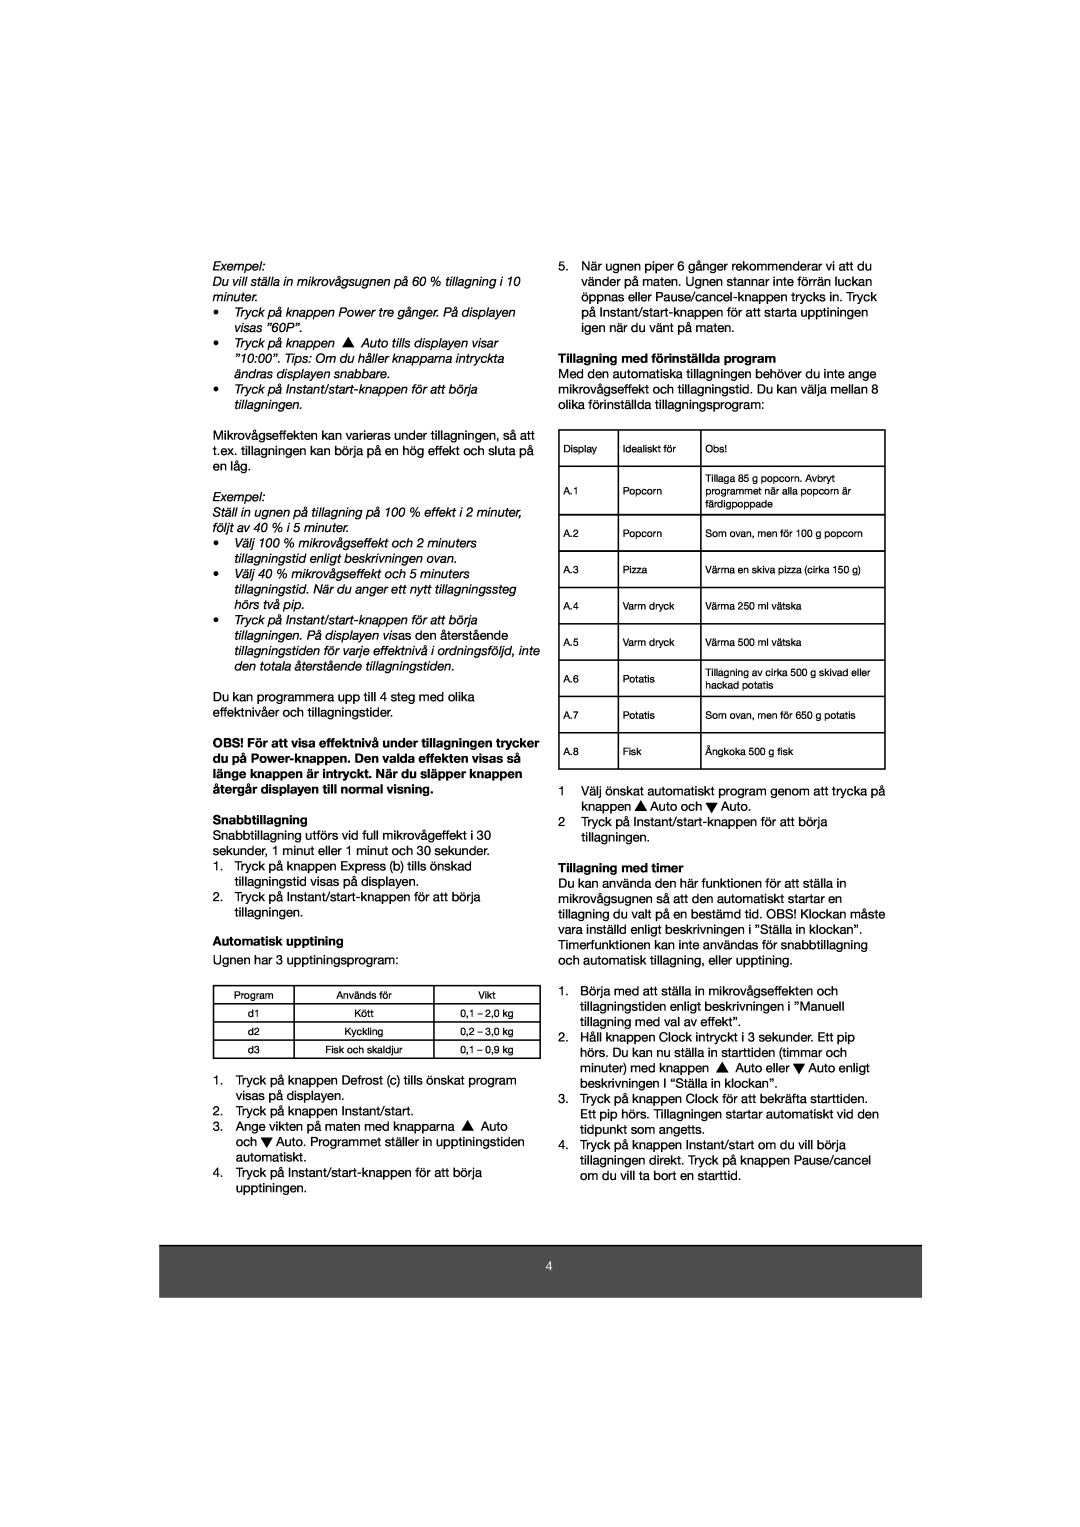 Melissa 653-081 manual Snabbtillagning, Automatisk upptining, Tillagning med förinställda program, Tillagning med timer 